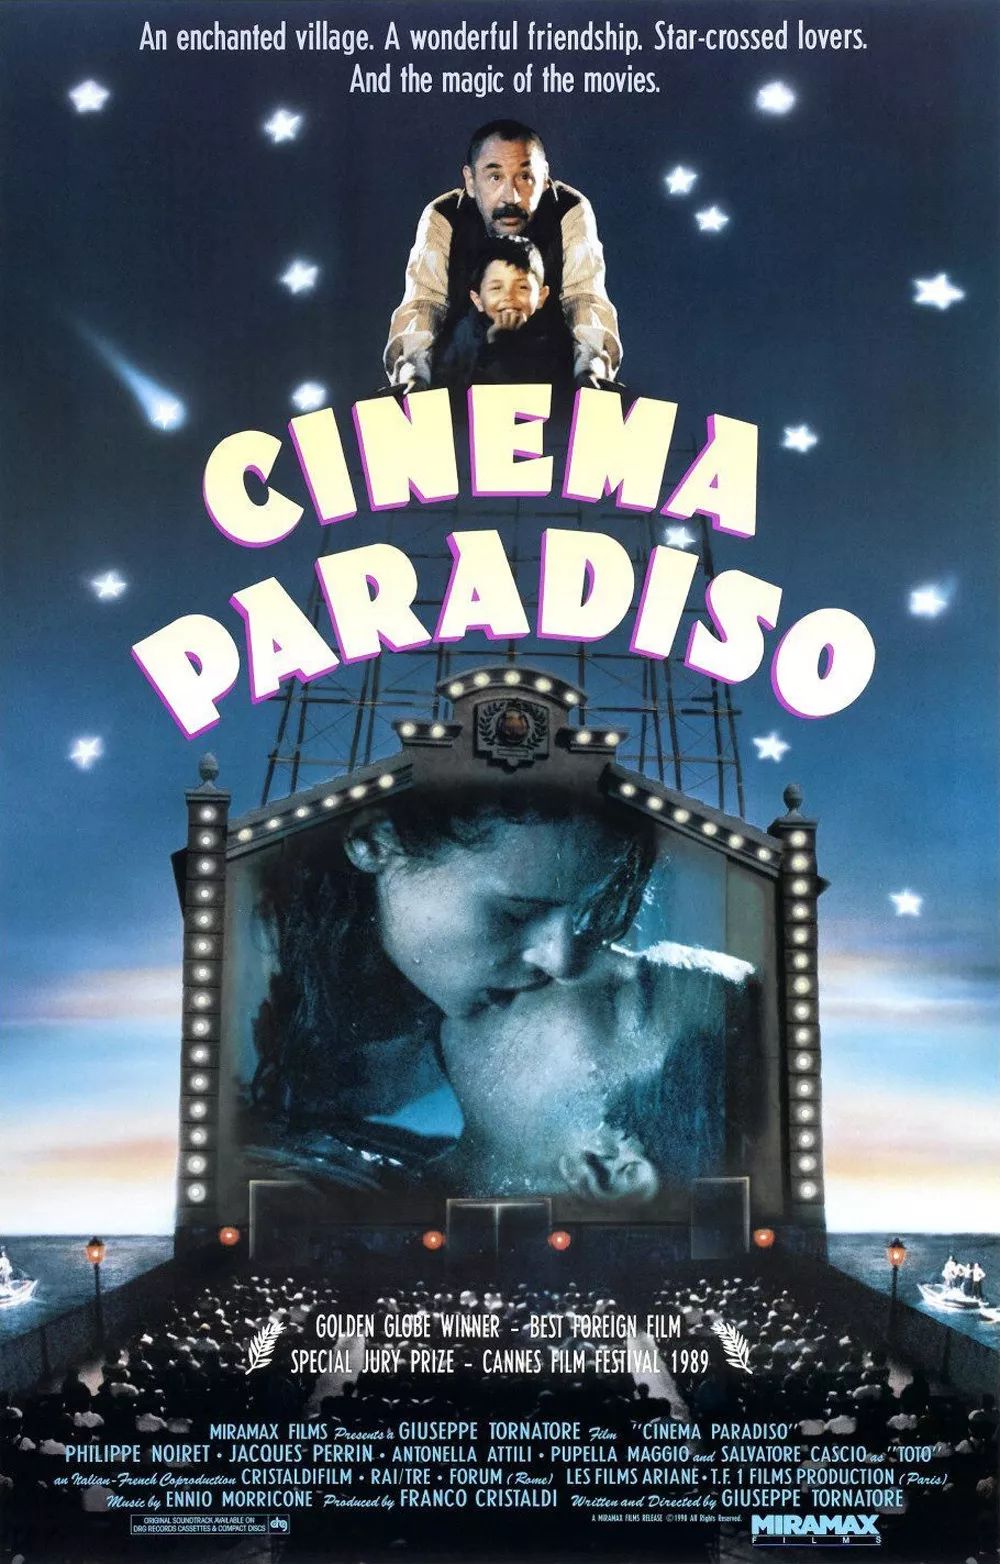 美版海报而中国一直使用"天堂电影院"这个惯用译名,但豆瓣的英文官方